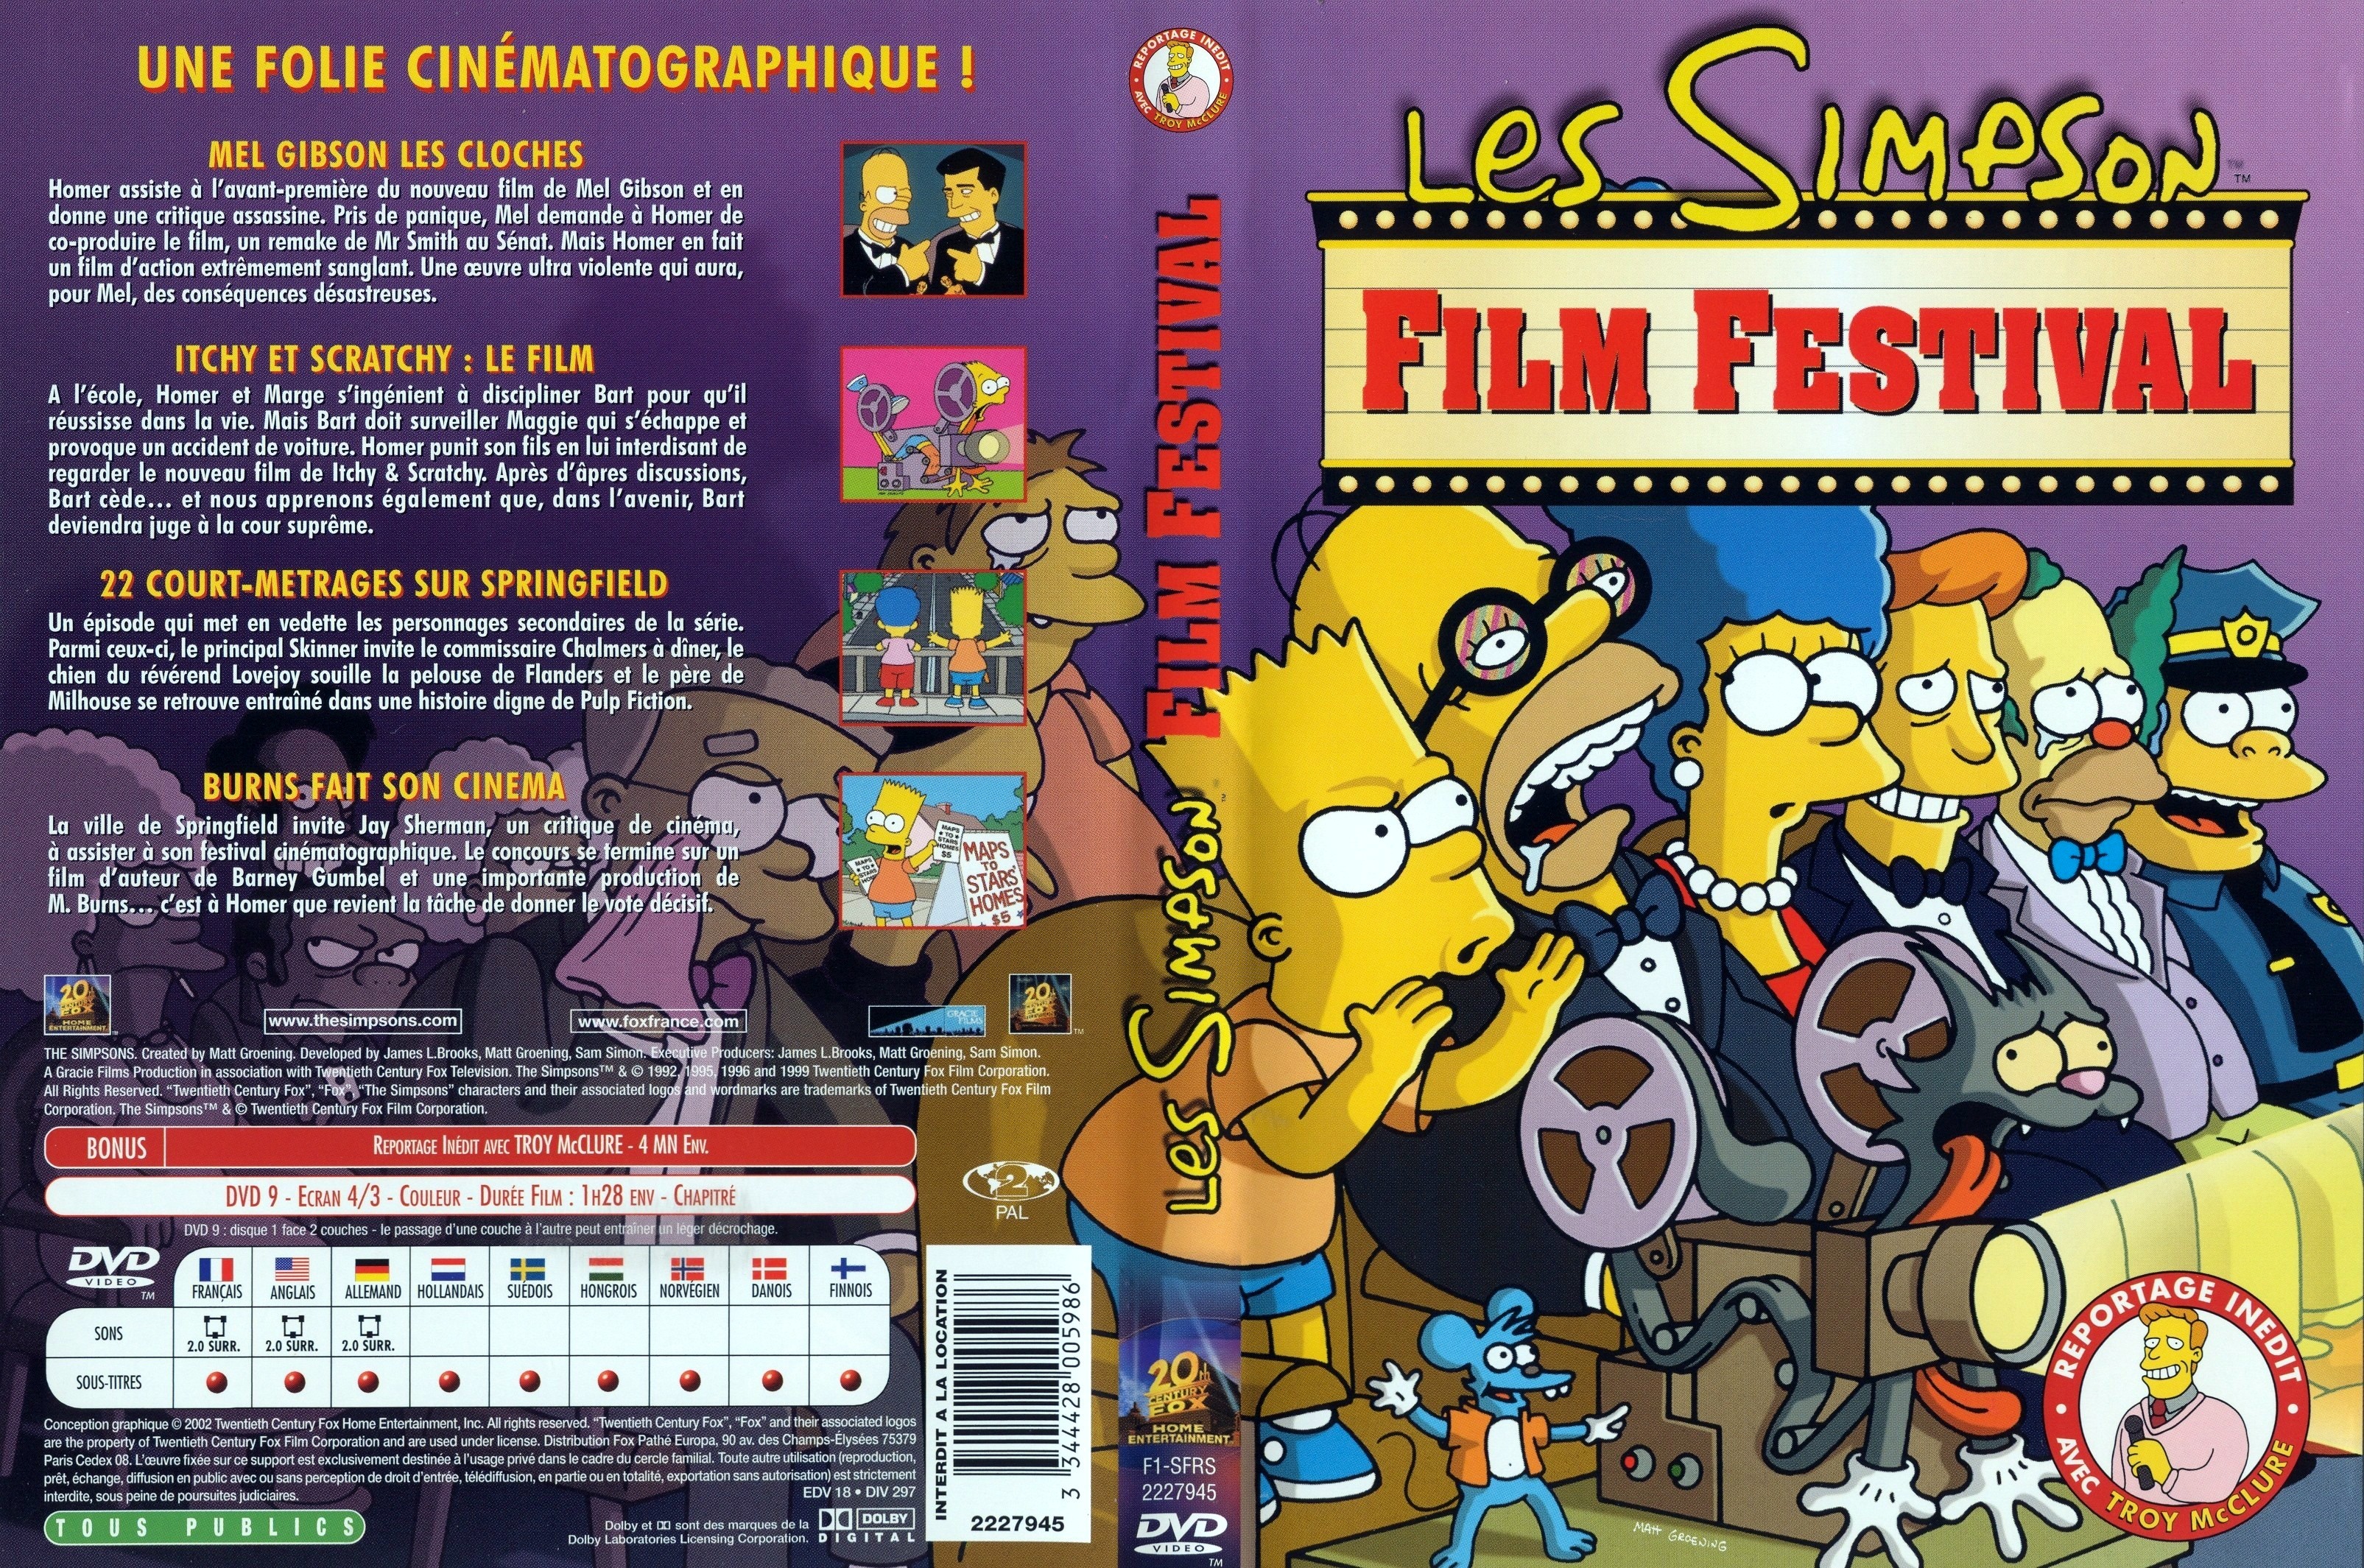 Jaquette DVD Les simpson film festival